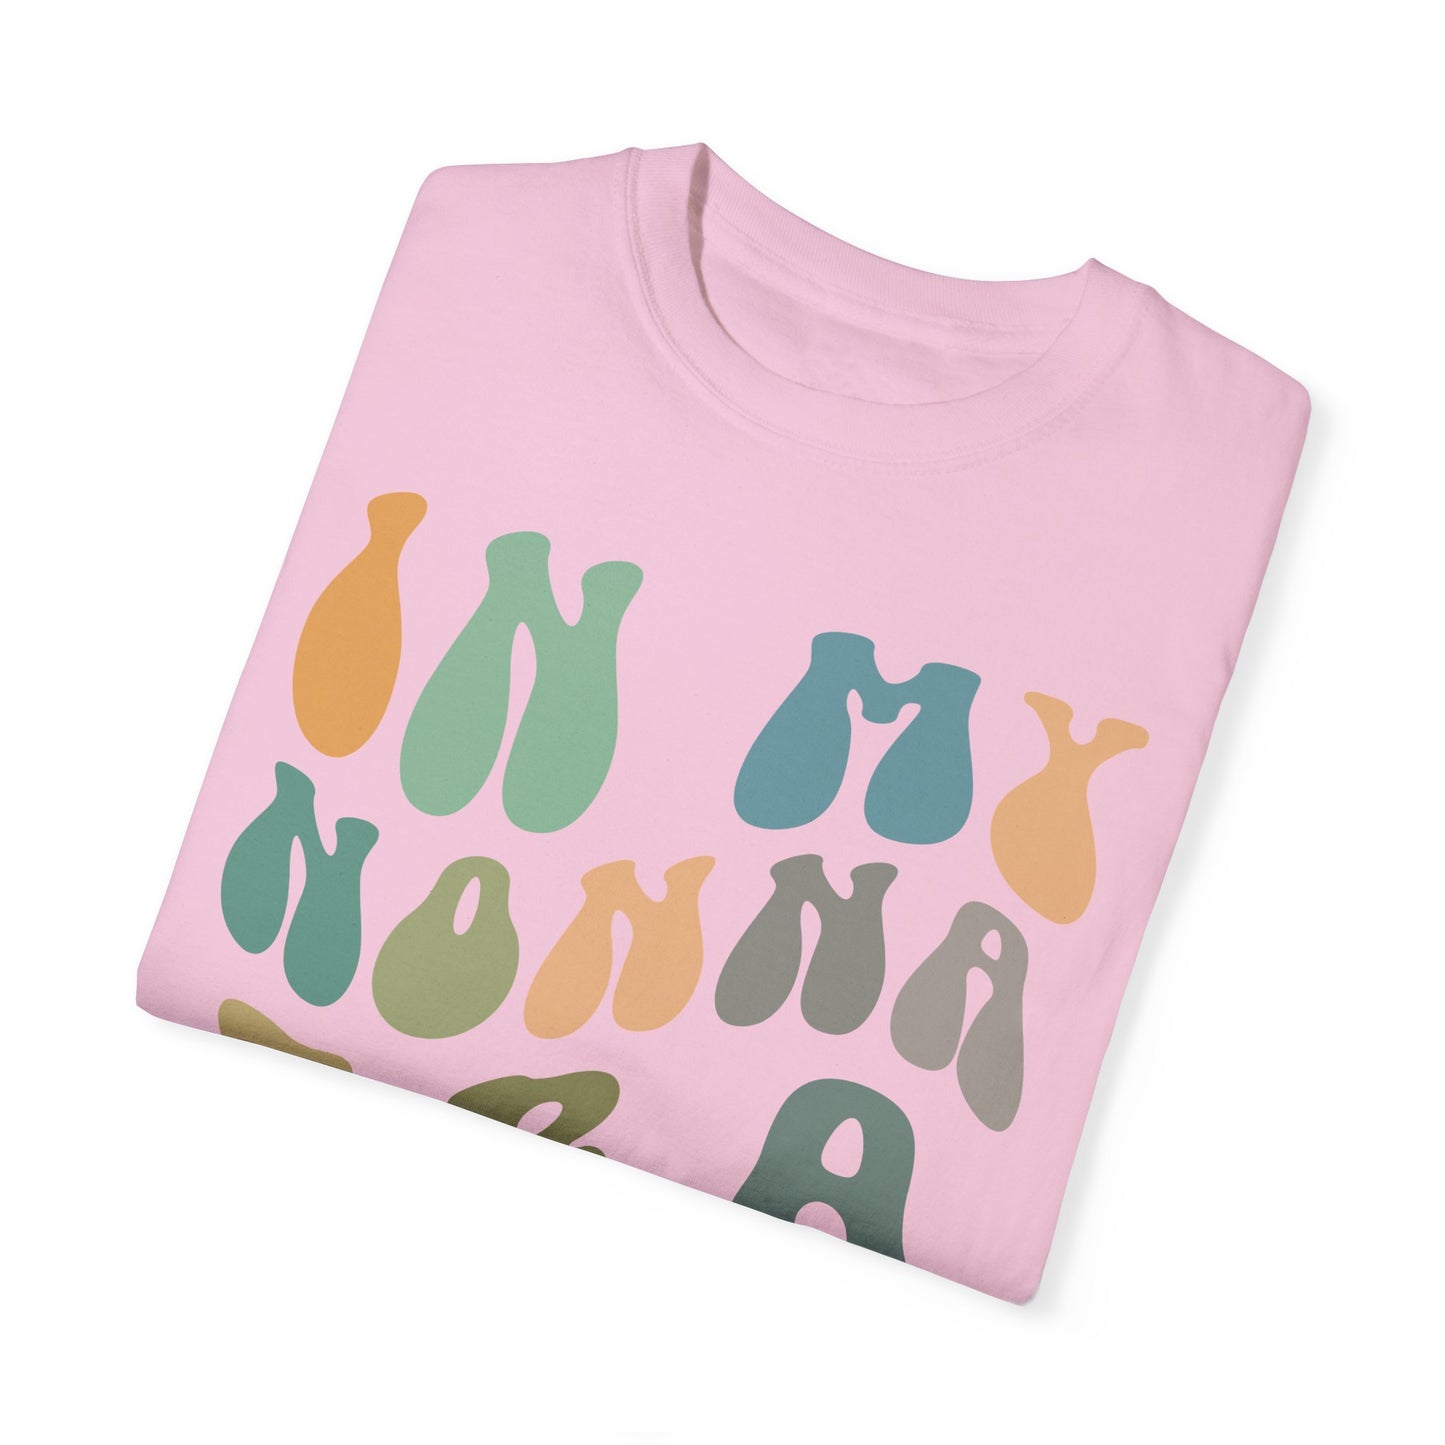 In My Nonna Era Shirt, Nonna Shirt, Best Nonna Shirt from Grandchildren, Gift for Best Nonna, Gifts for Nonna, Comfort Colors Shirt, CC982